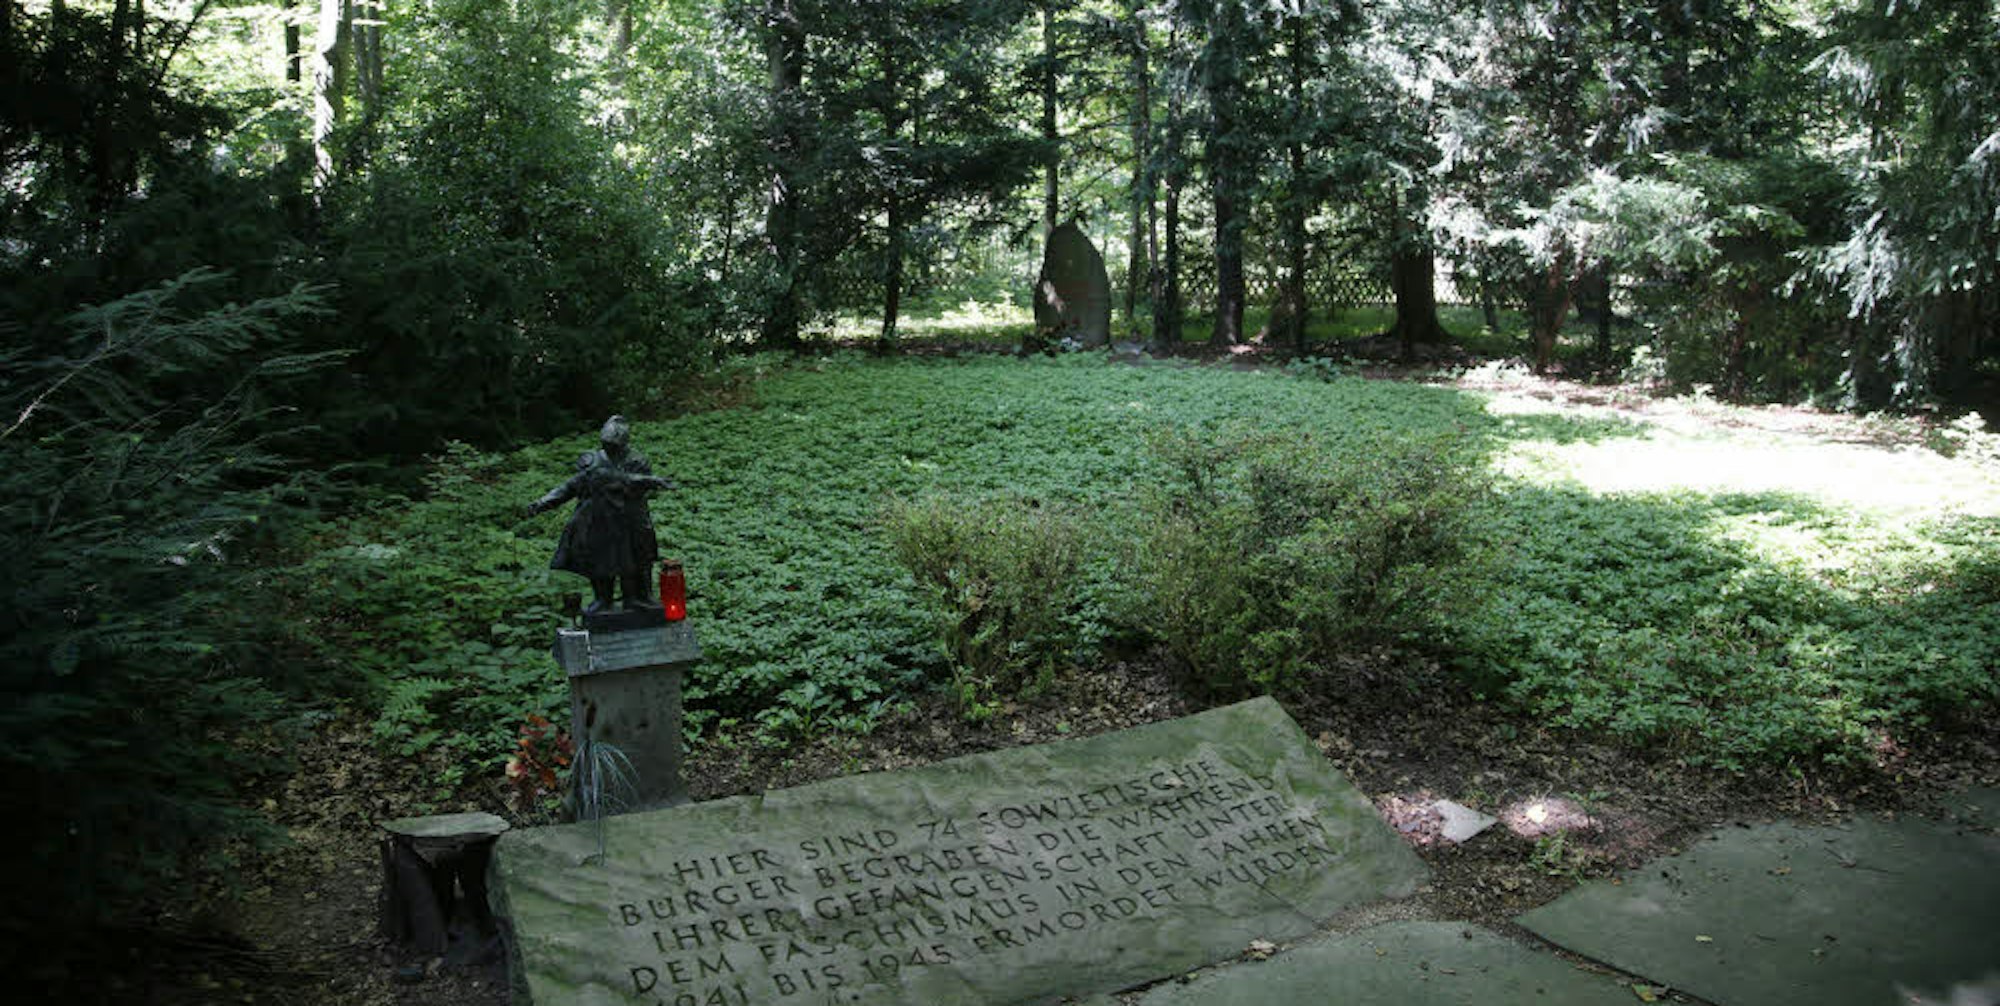 Ein besonderer Ort mitten im Wald: Eine Gedenkstätte erinnert an die Ermordung von Zwangsarbeitern. (Archivfoto)